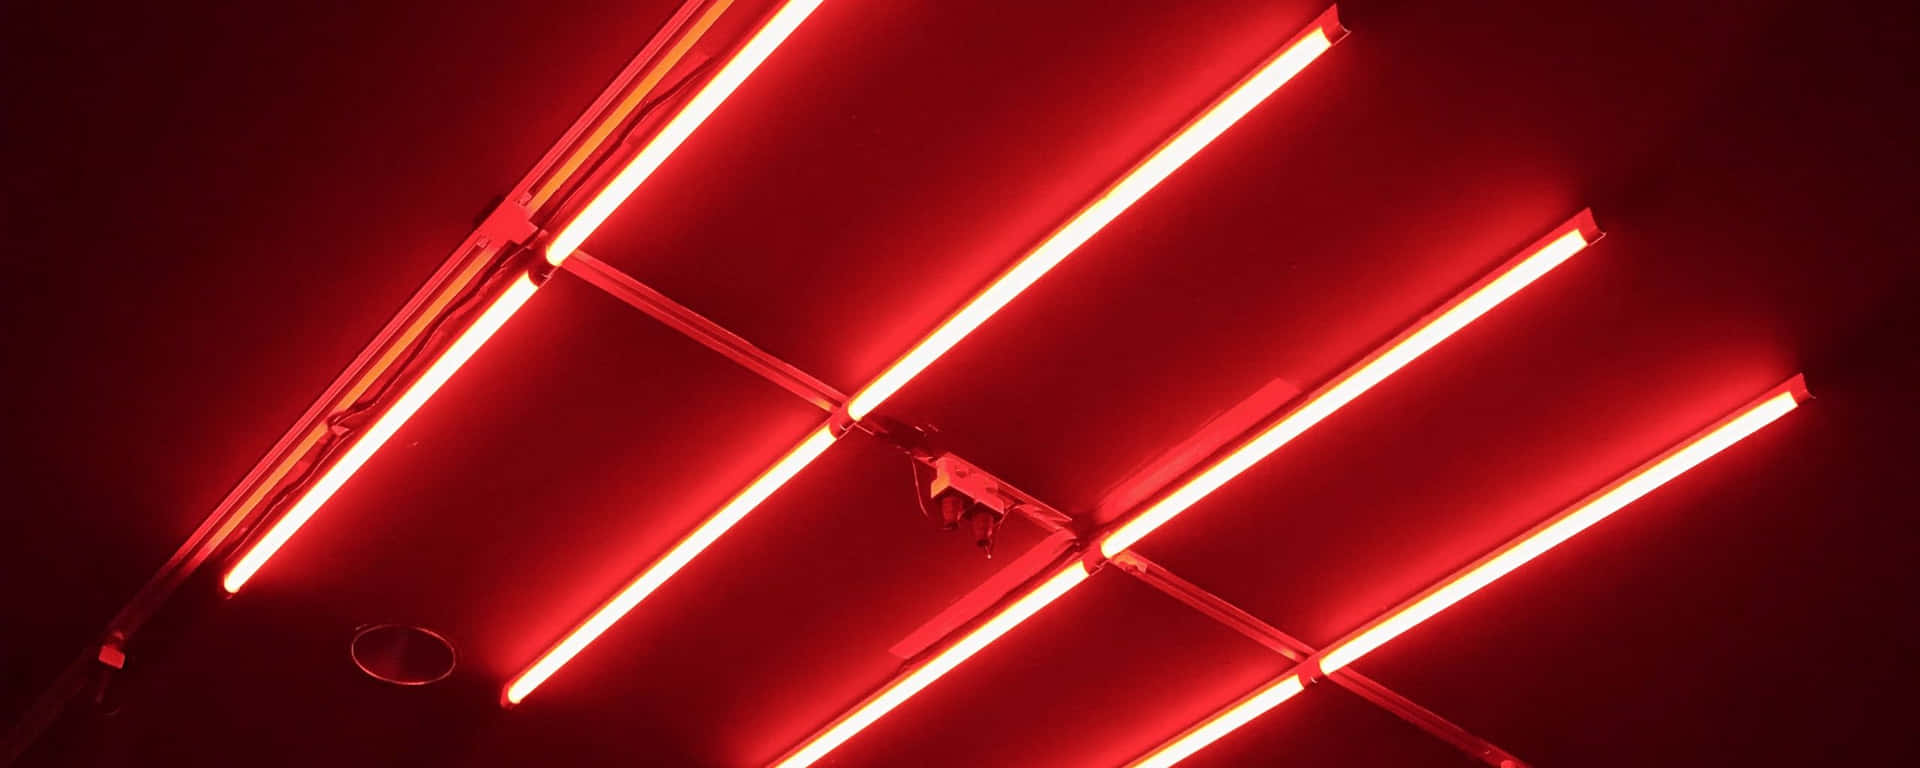 Lucefluorescente Rossa Ultra Wide In Alta Definizione Hd. Sfondo